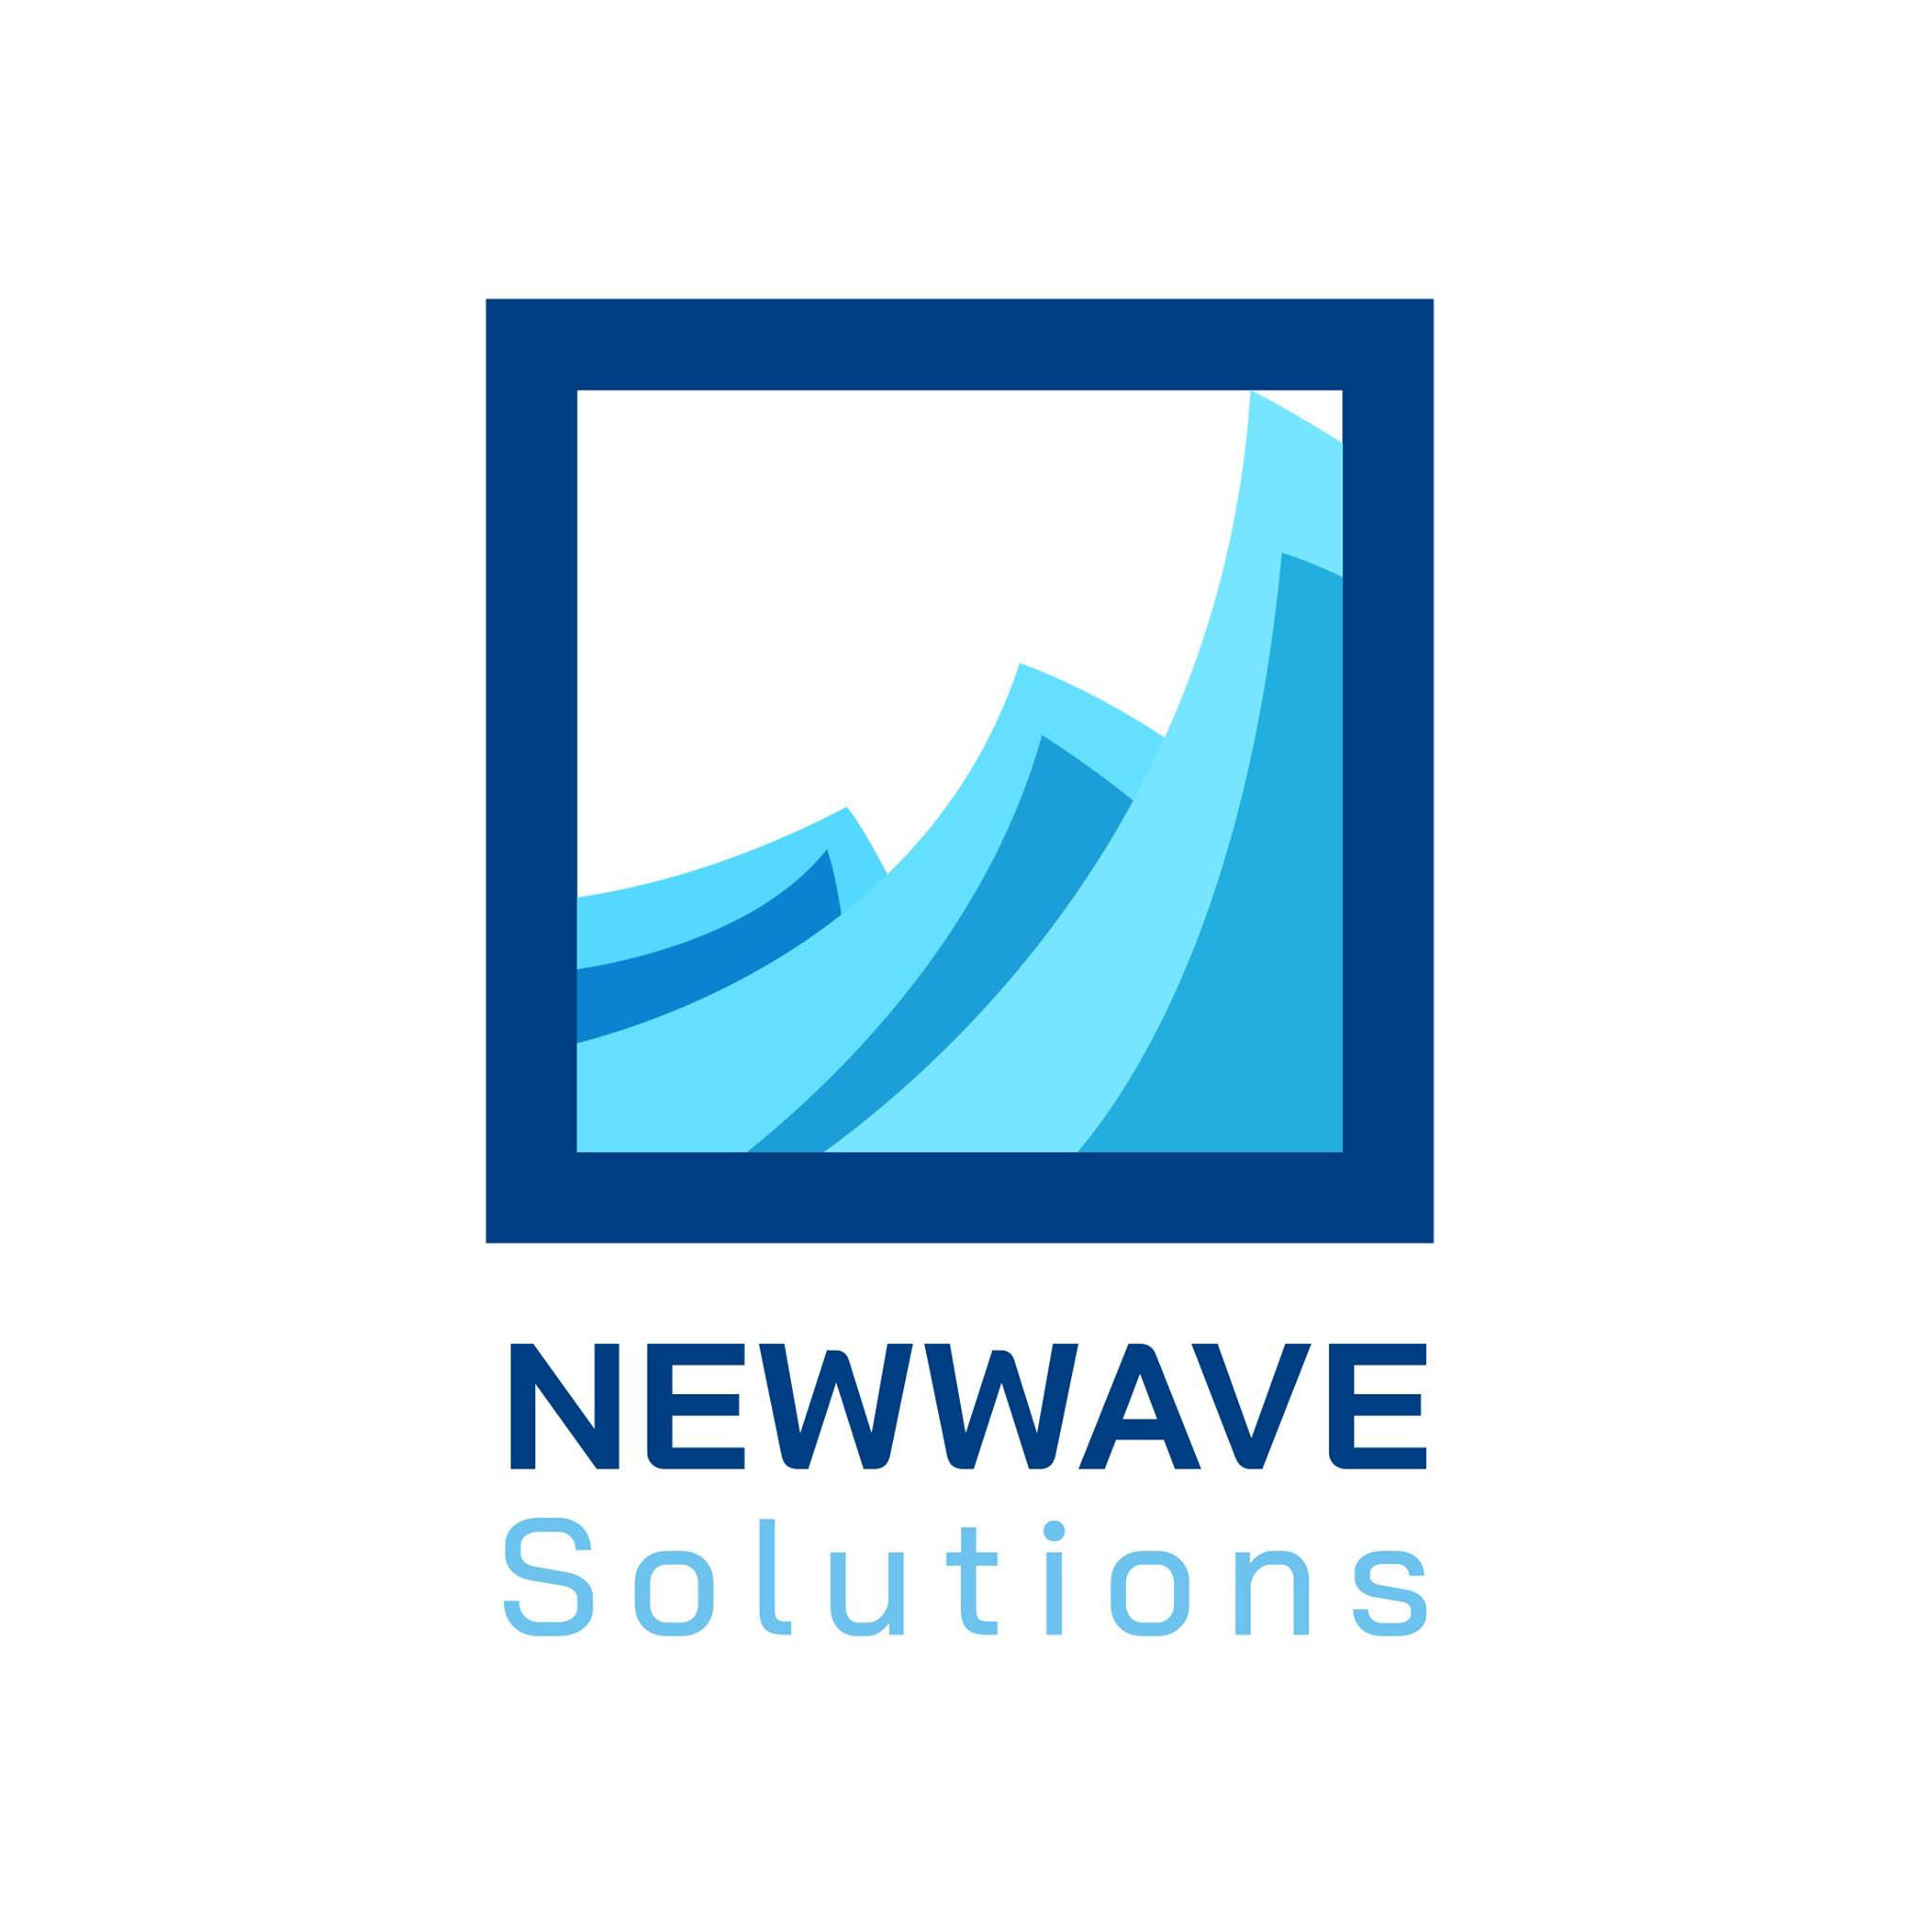 Newwave Solutions_Web game với nhiều chức năng thú vị